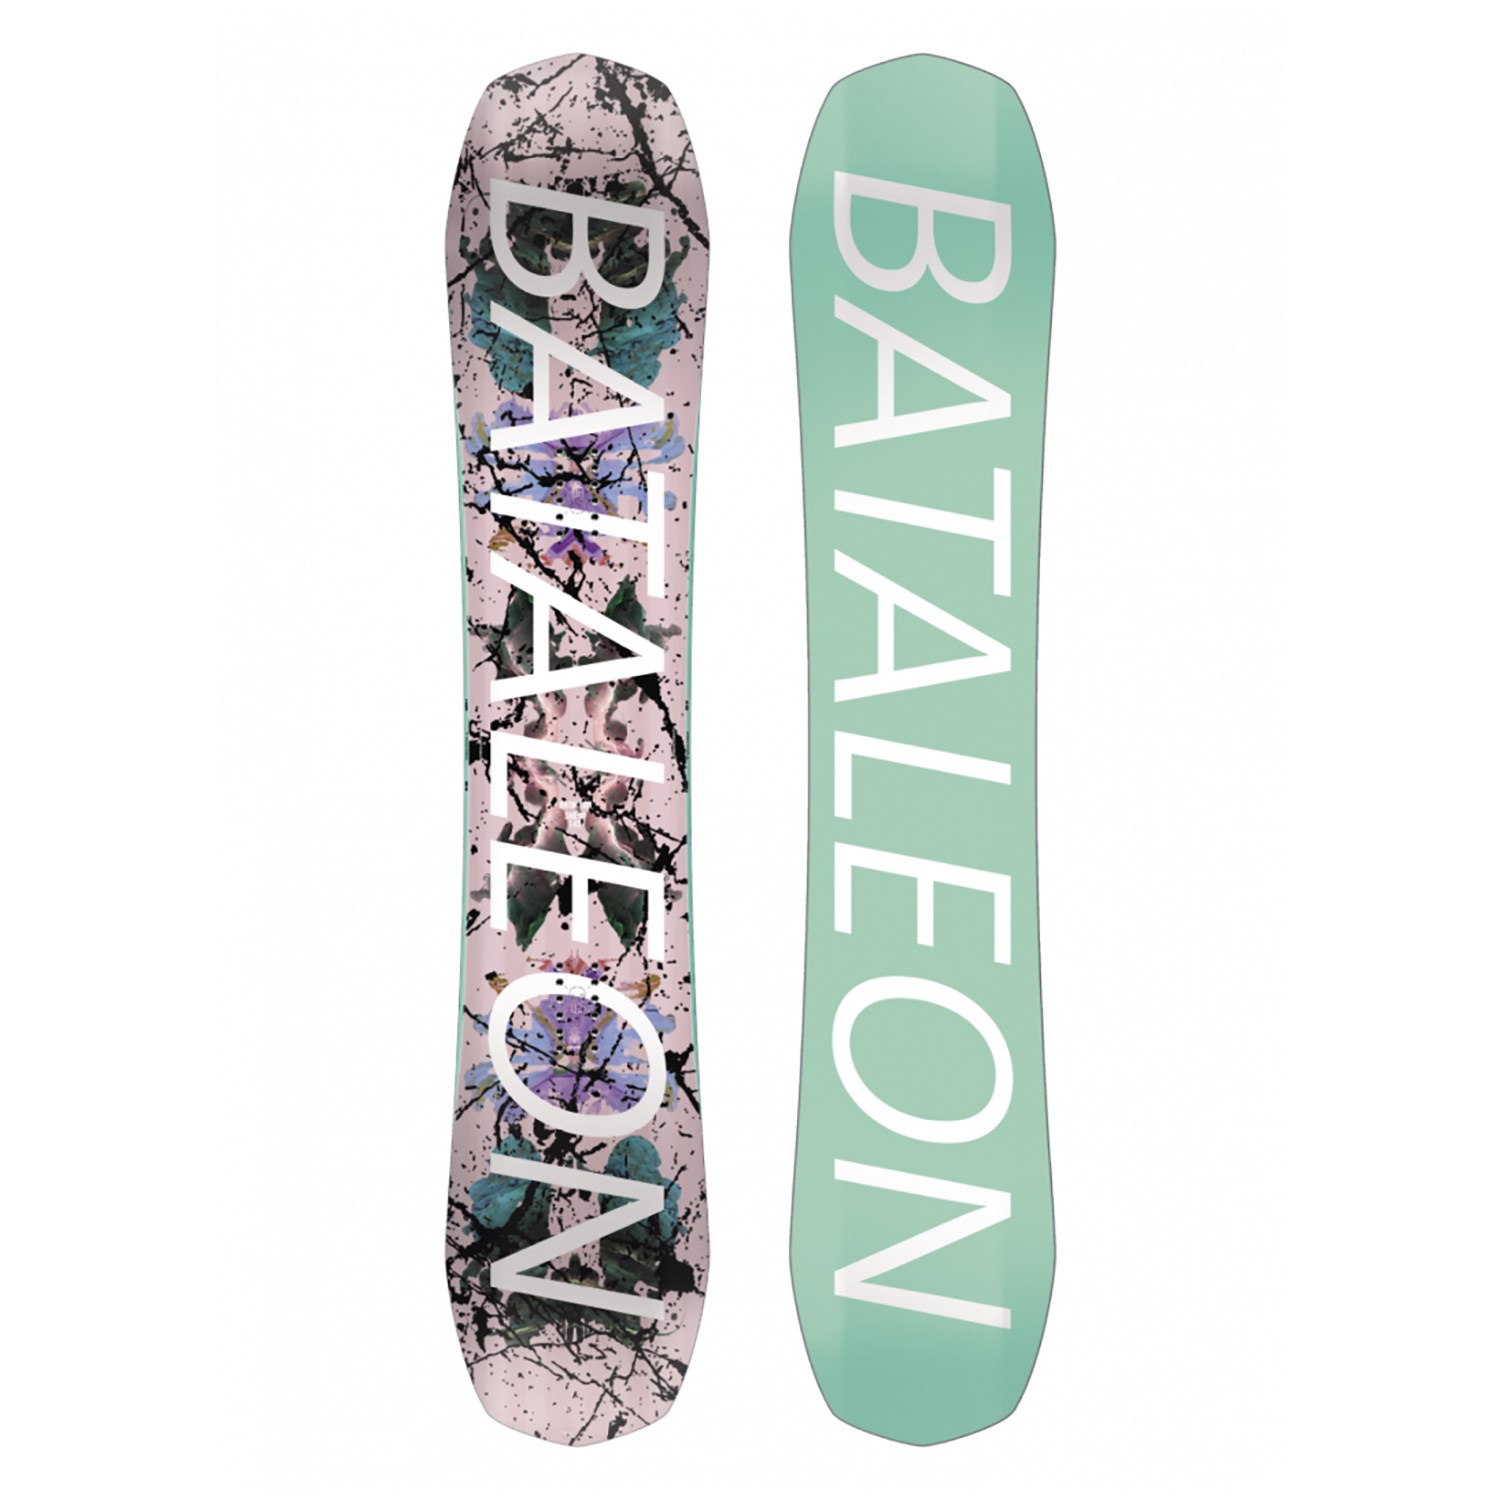 Origineel Haas blok Bataleon She-W Snowboard - Women's 2019 | evo